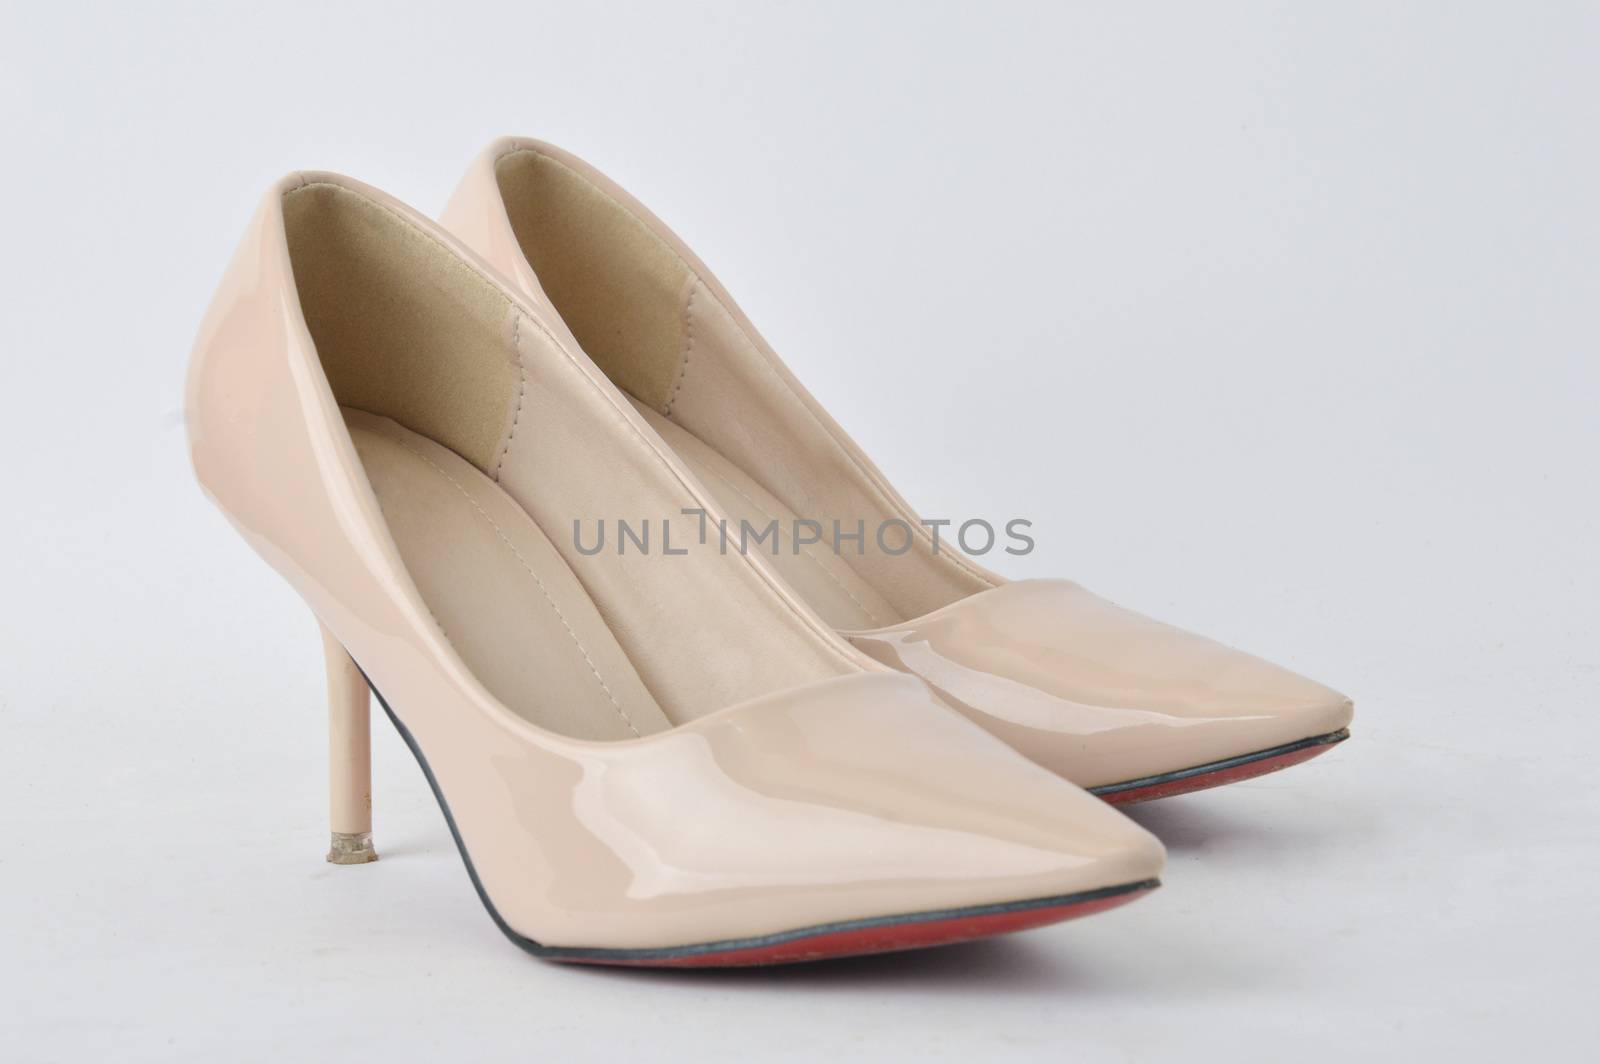 high heel shoes by antonihalim